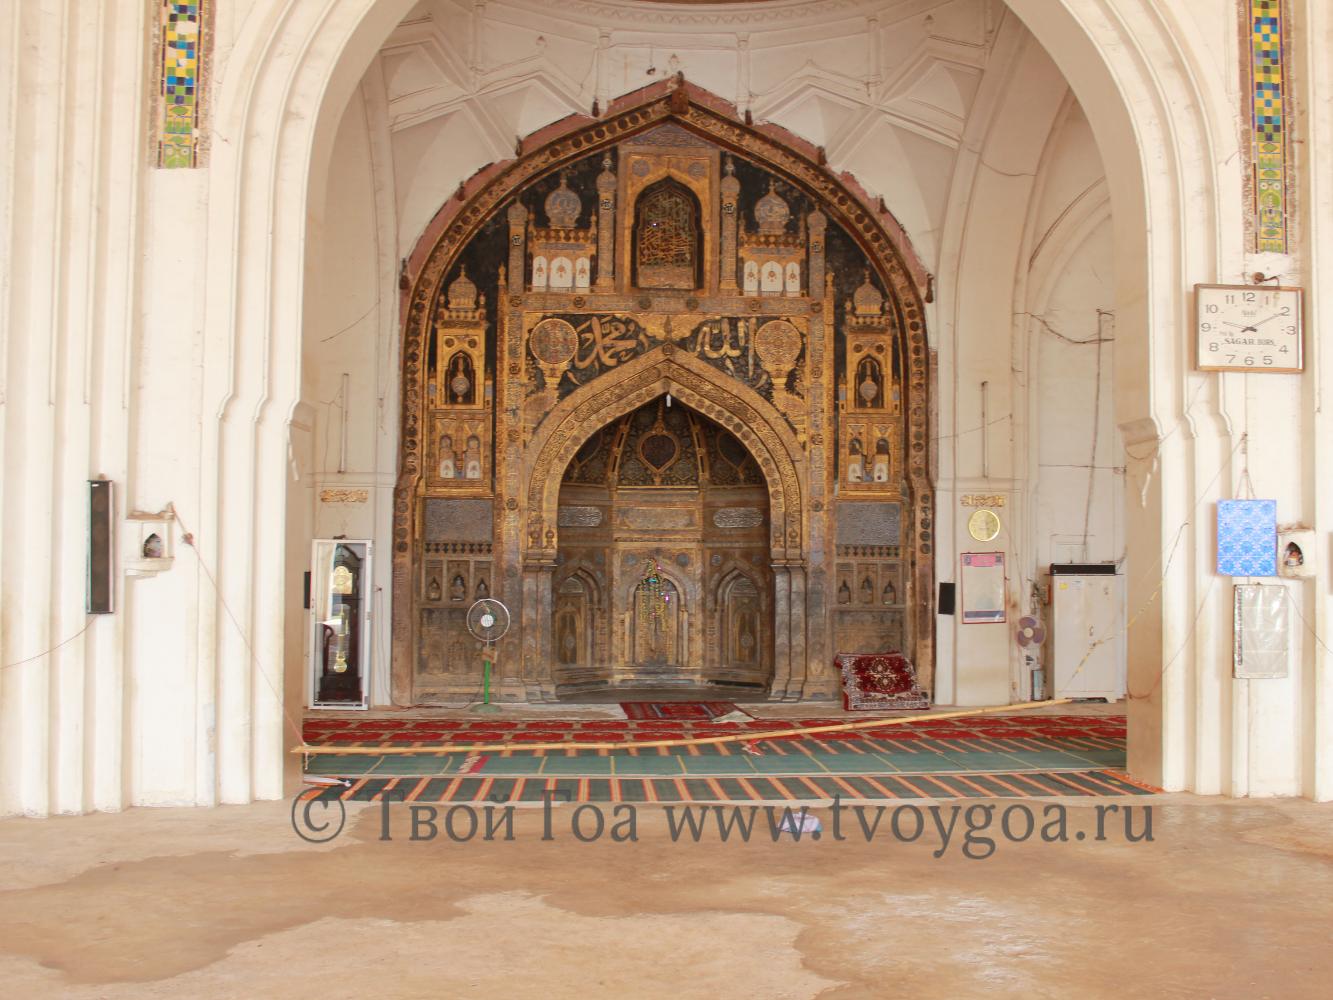 в мечети Джама Масджид храниться копия Карана, написанная золотом